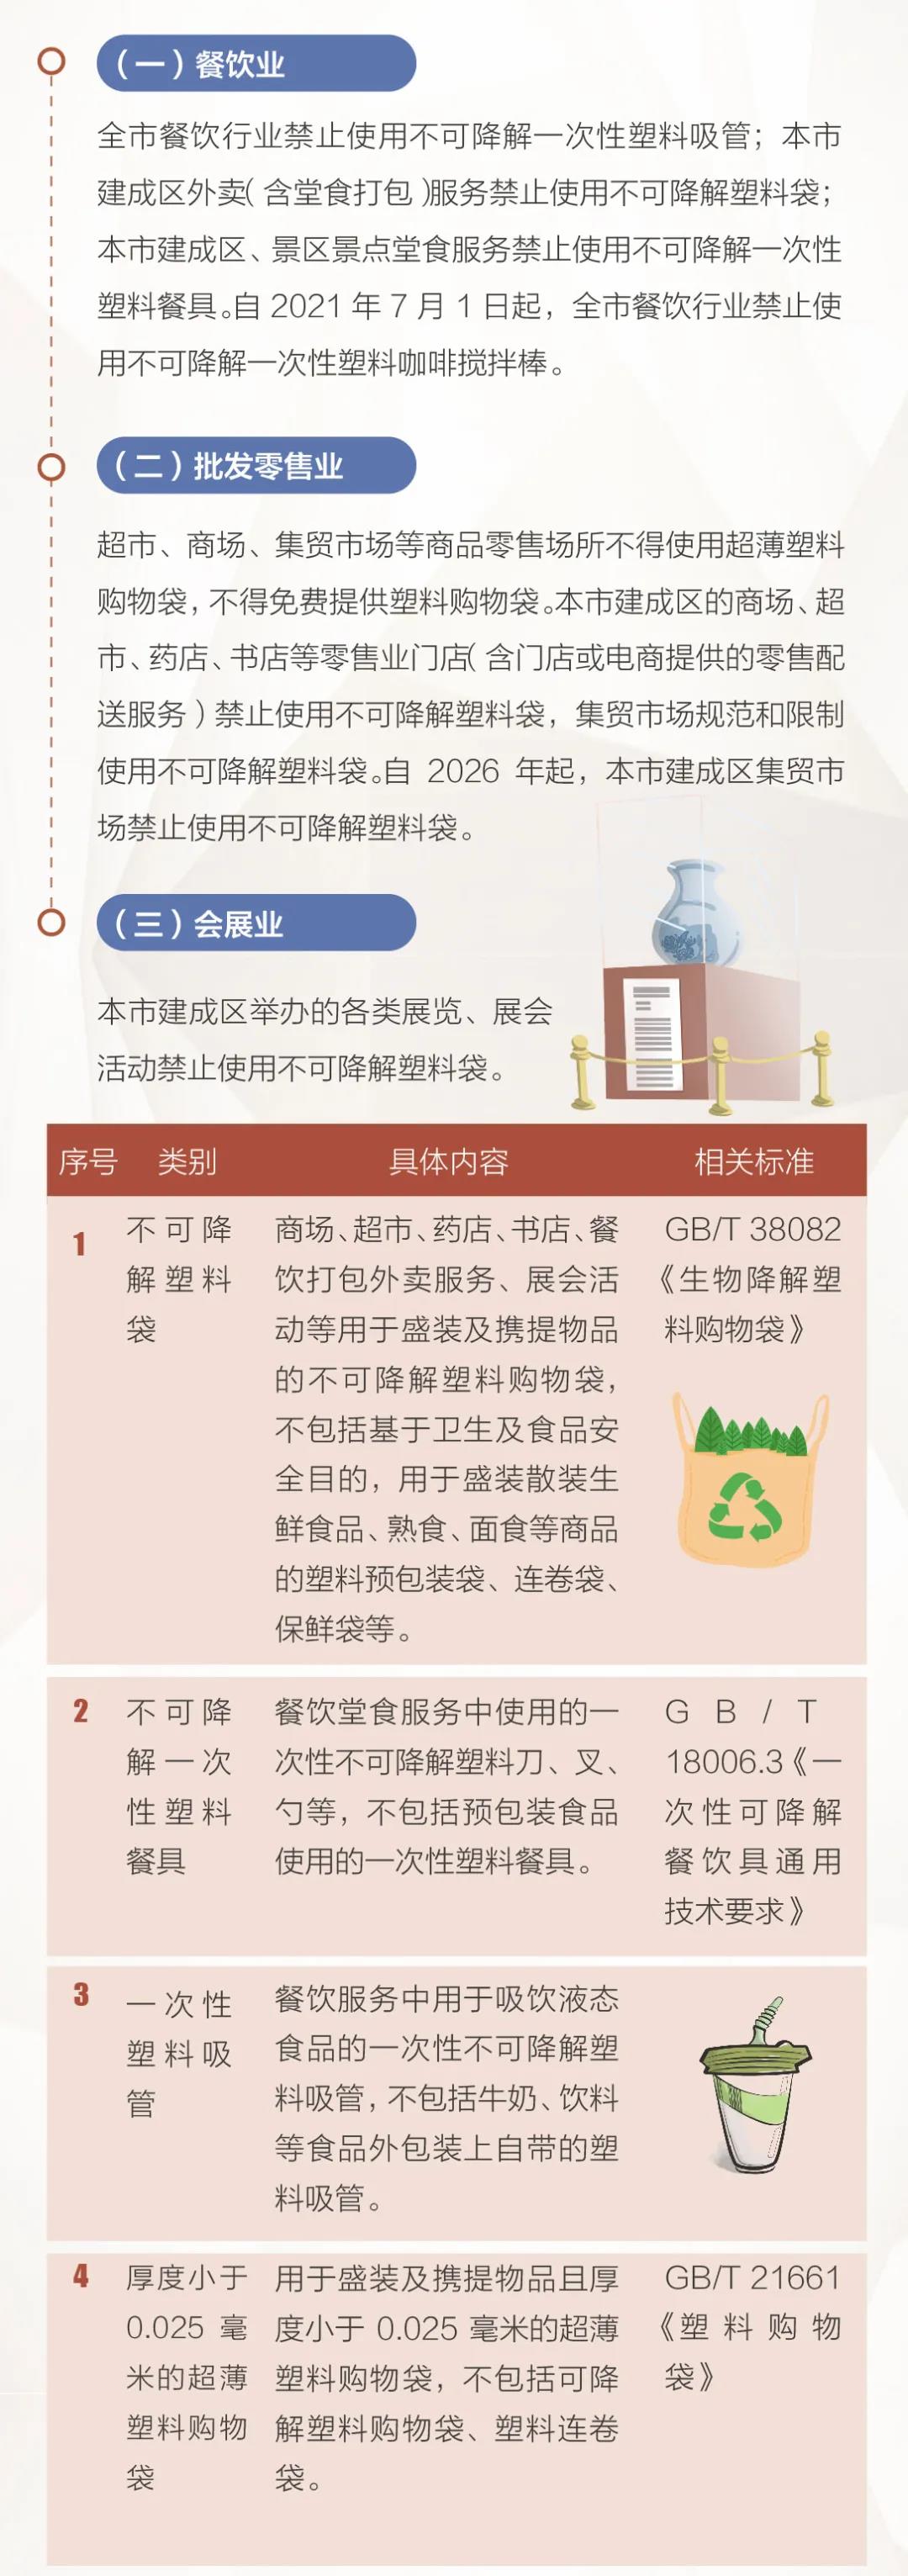 北京市塑料污染治理工作详解发布：外卖将禁用不可降解塑料袋